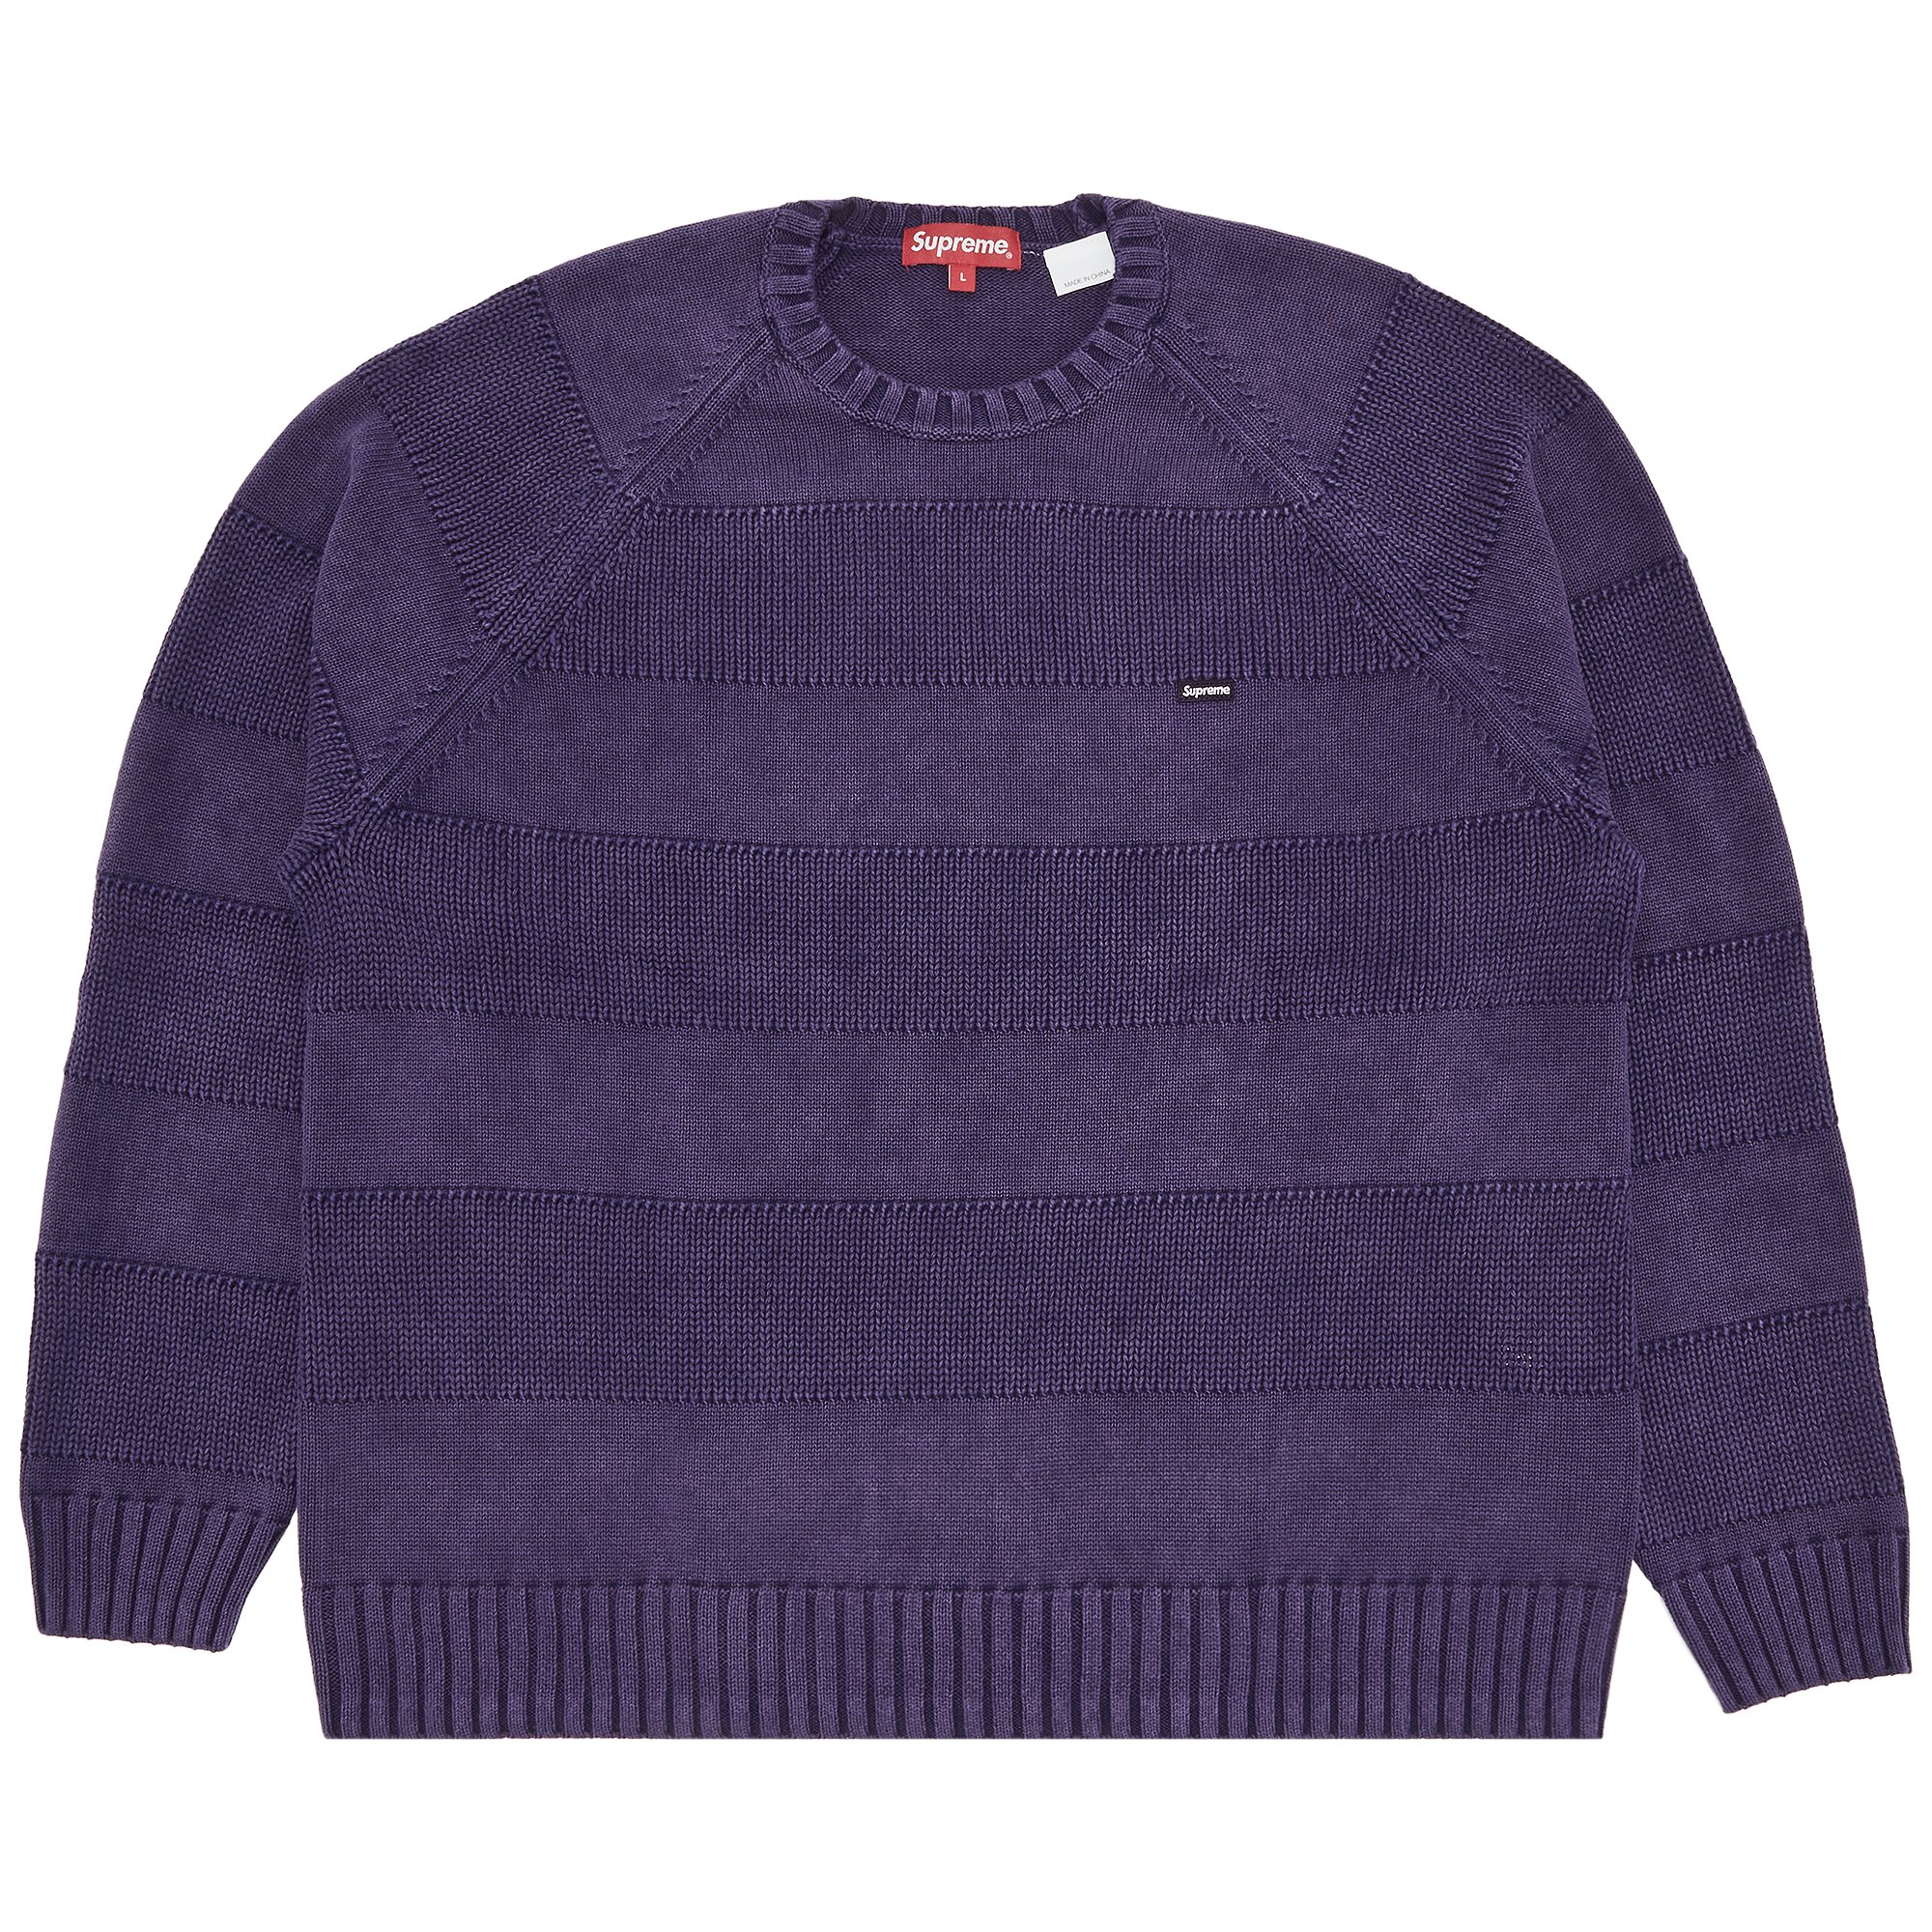 Supreme Small Box Stripe Sweater